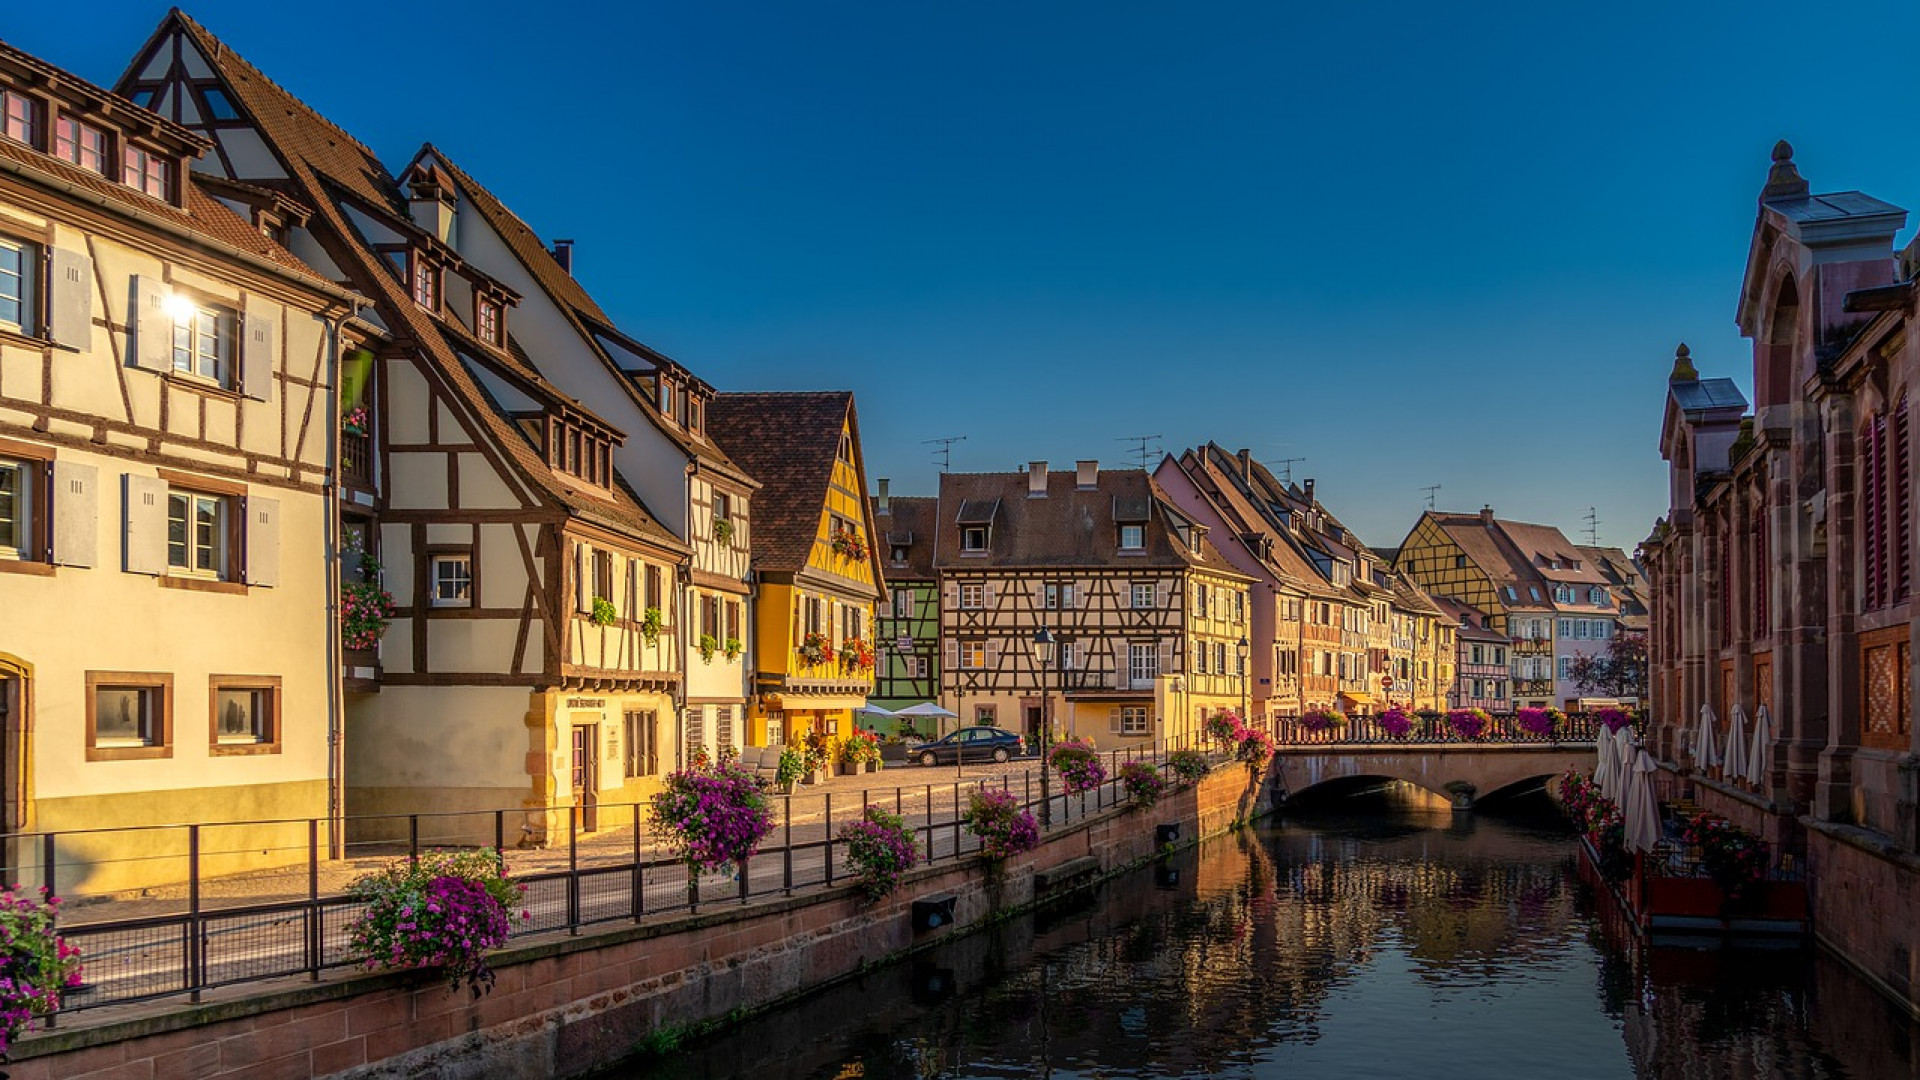 Les avantages de l'immobilier neuf en Alsace